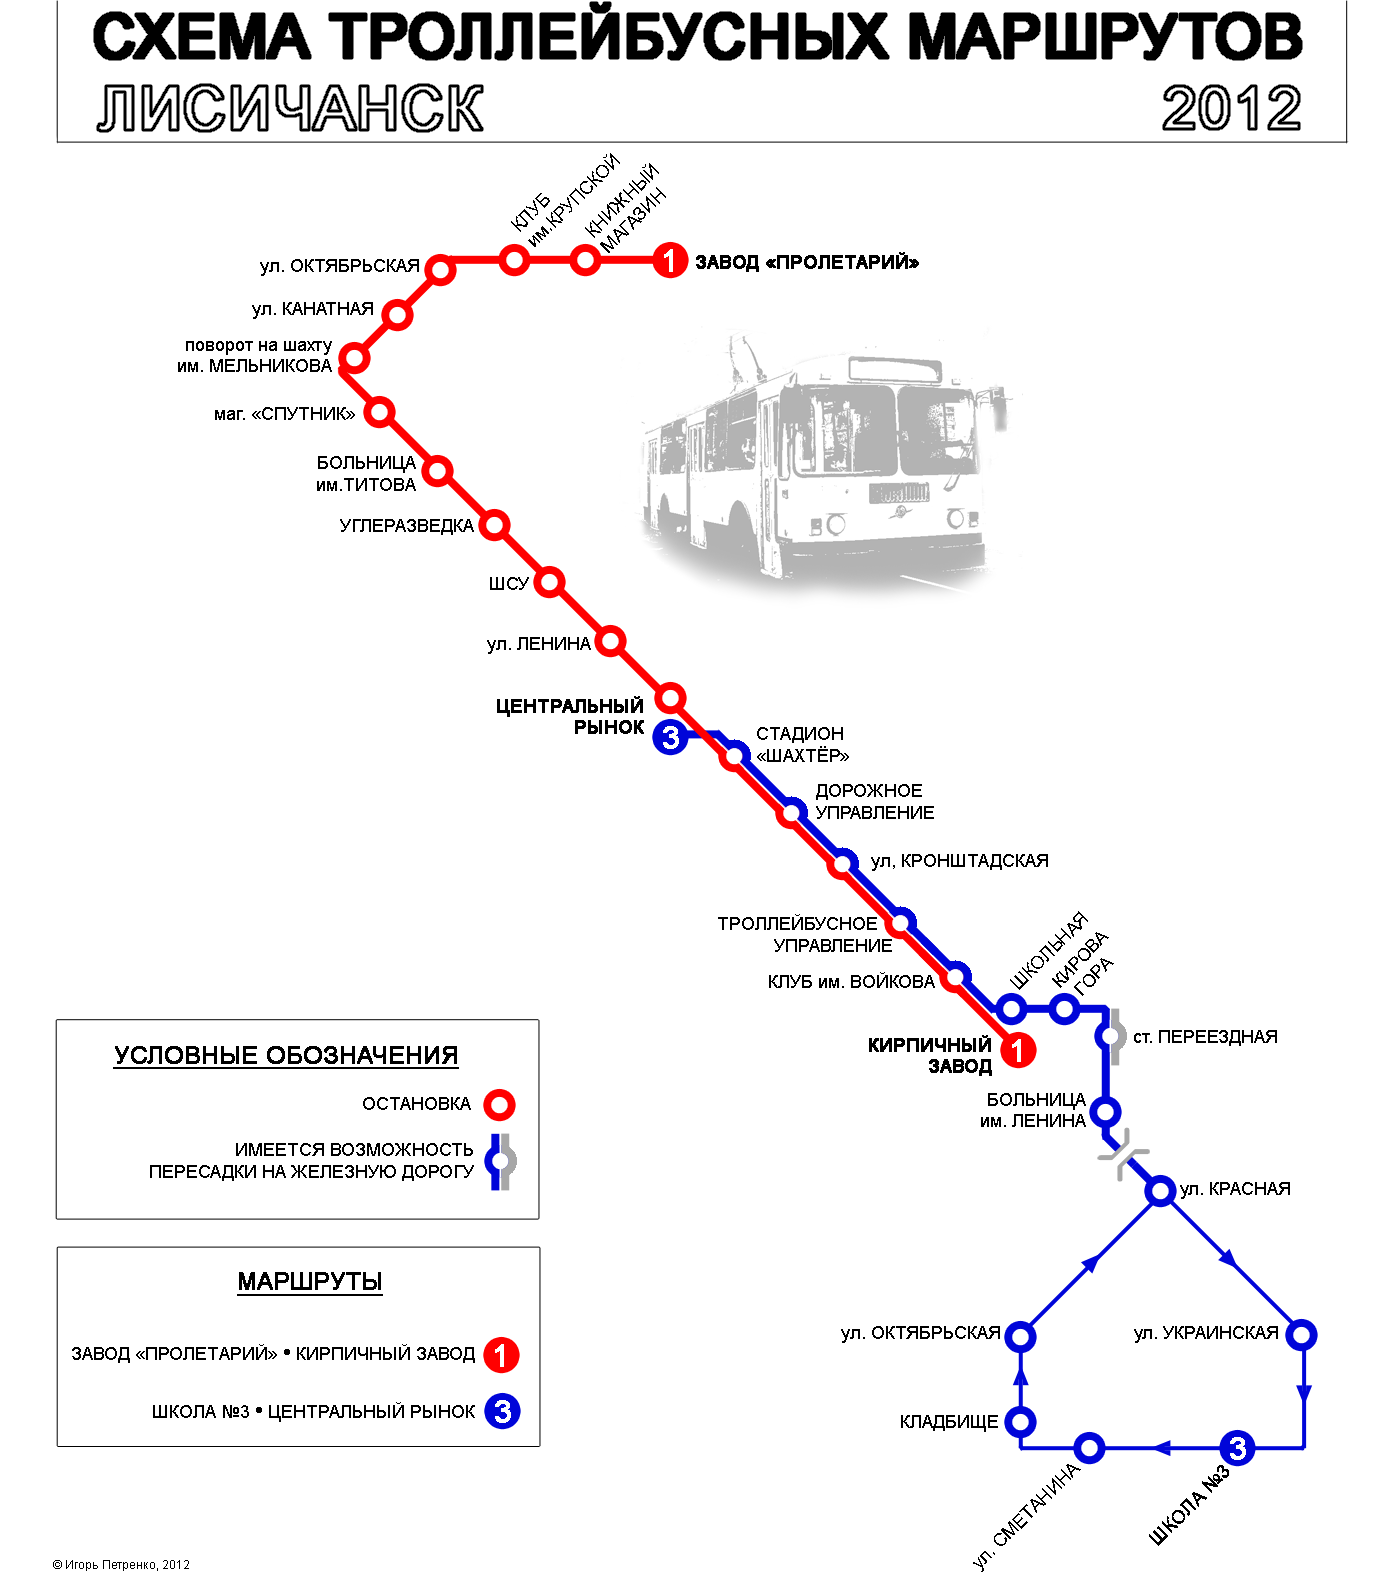 Lisičanska — Route maps